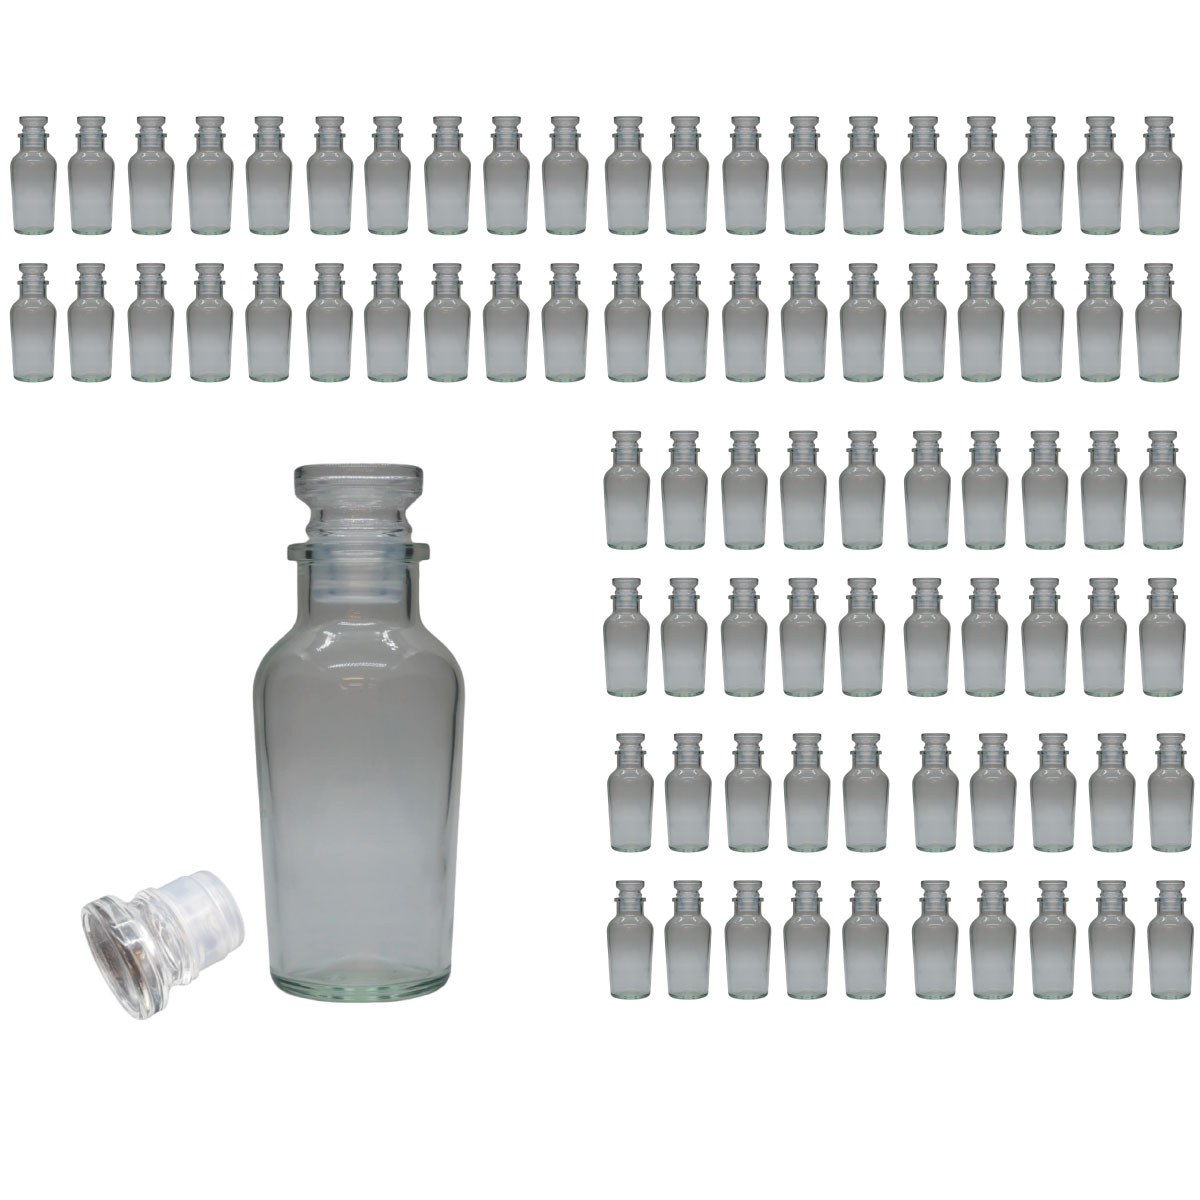 スパイスボトル ガラス瓶 ワグナー 120ml 80本 カートン 業務用 日本製 調味料入れ ガラス栓 か フリフリ中栓 が選べます シンプル おしゃれ な デザイン 2